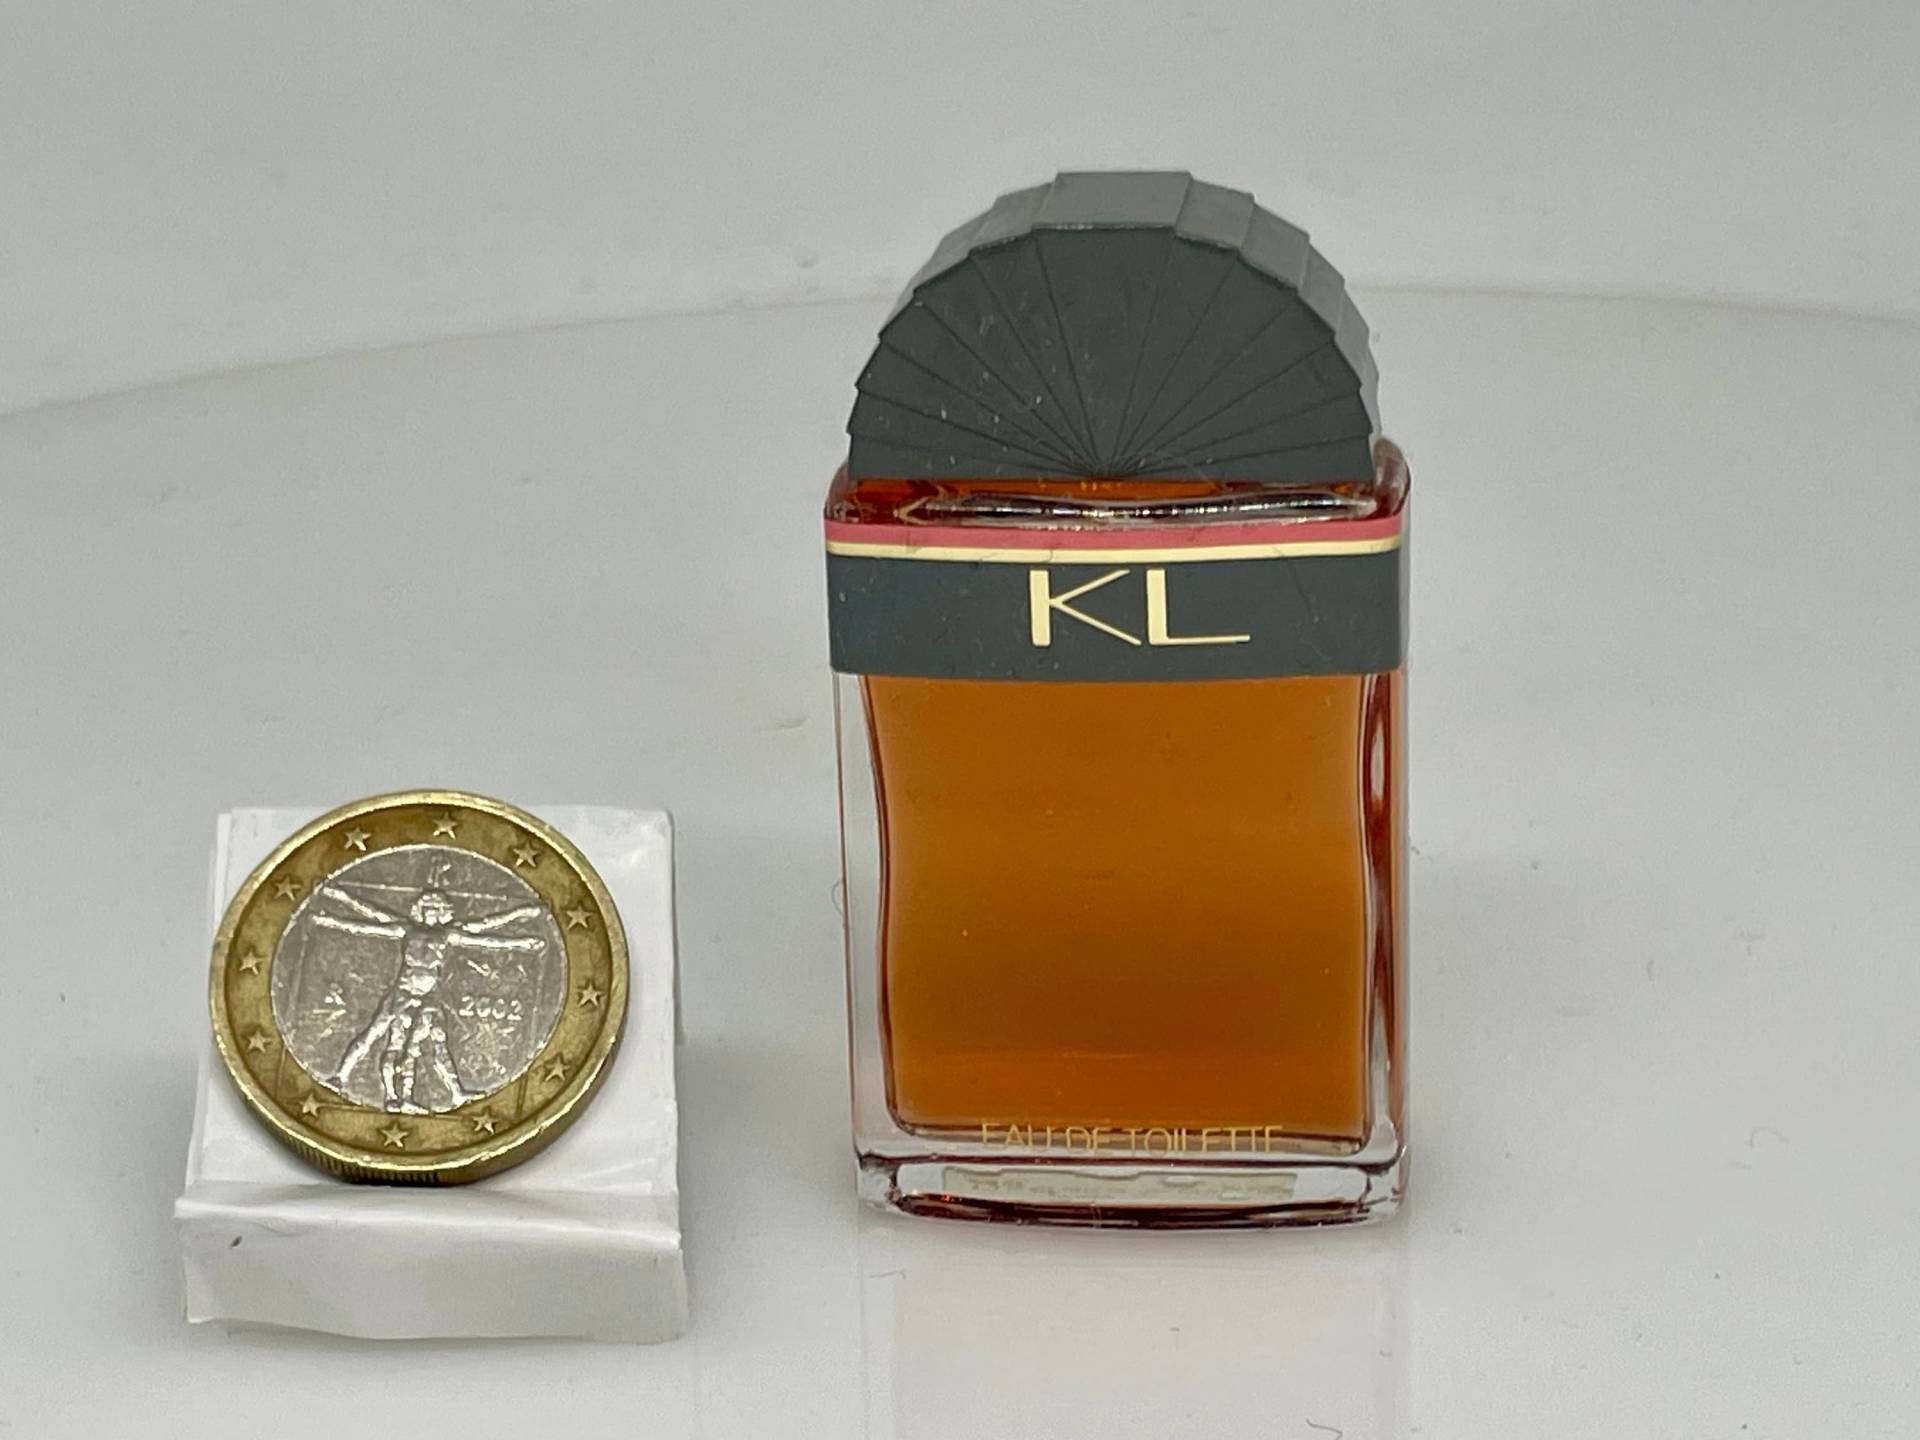 Kl Von Karl Lagerfeld 1982 Vintage-Miniatur von VibaVintage